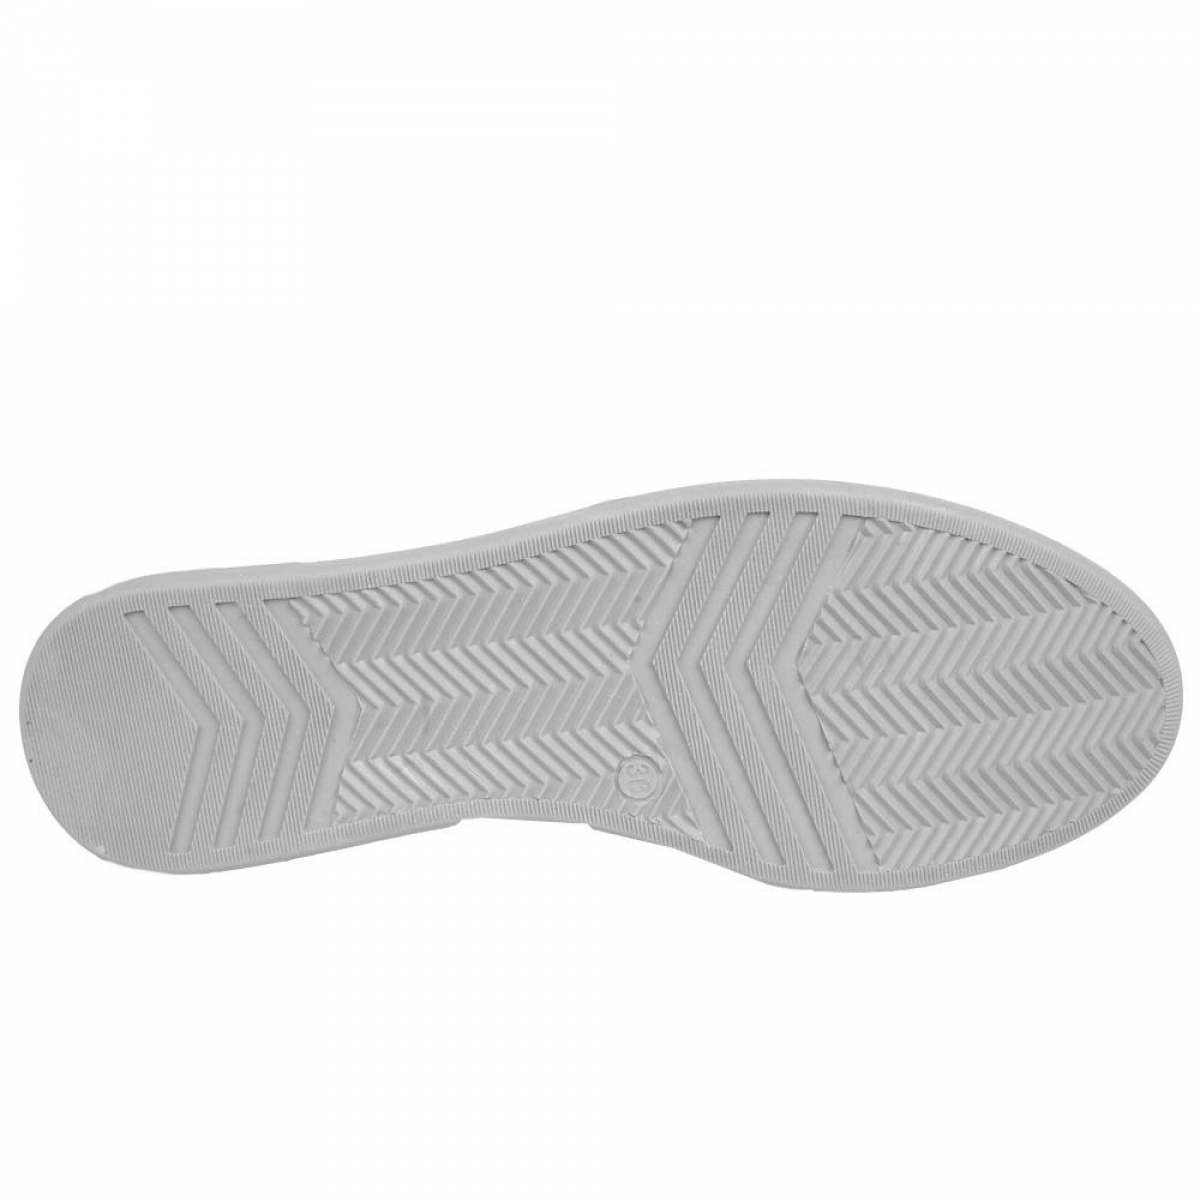 Flo 201-1135 Manner Beyaz Yazlık Bayan Sneaker Spor Ayakkabı. 1